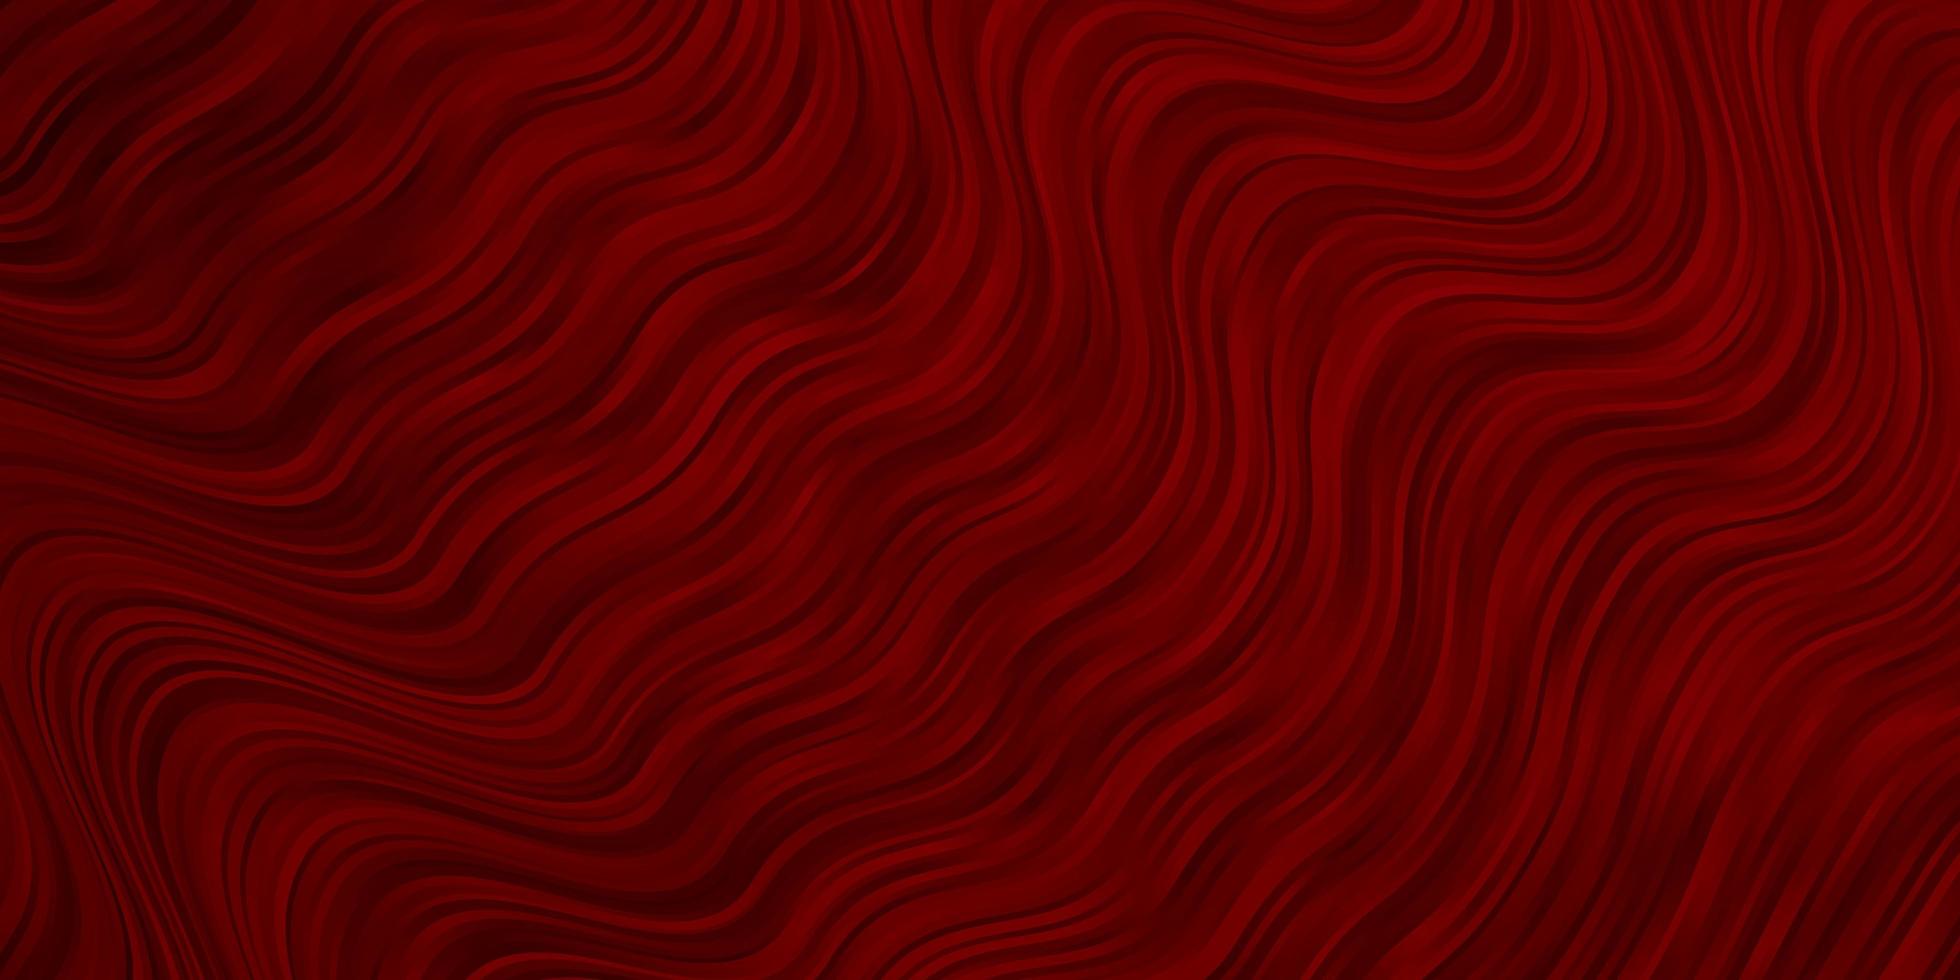 sfondo vettoriale rosso scuro con linee ironiche